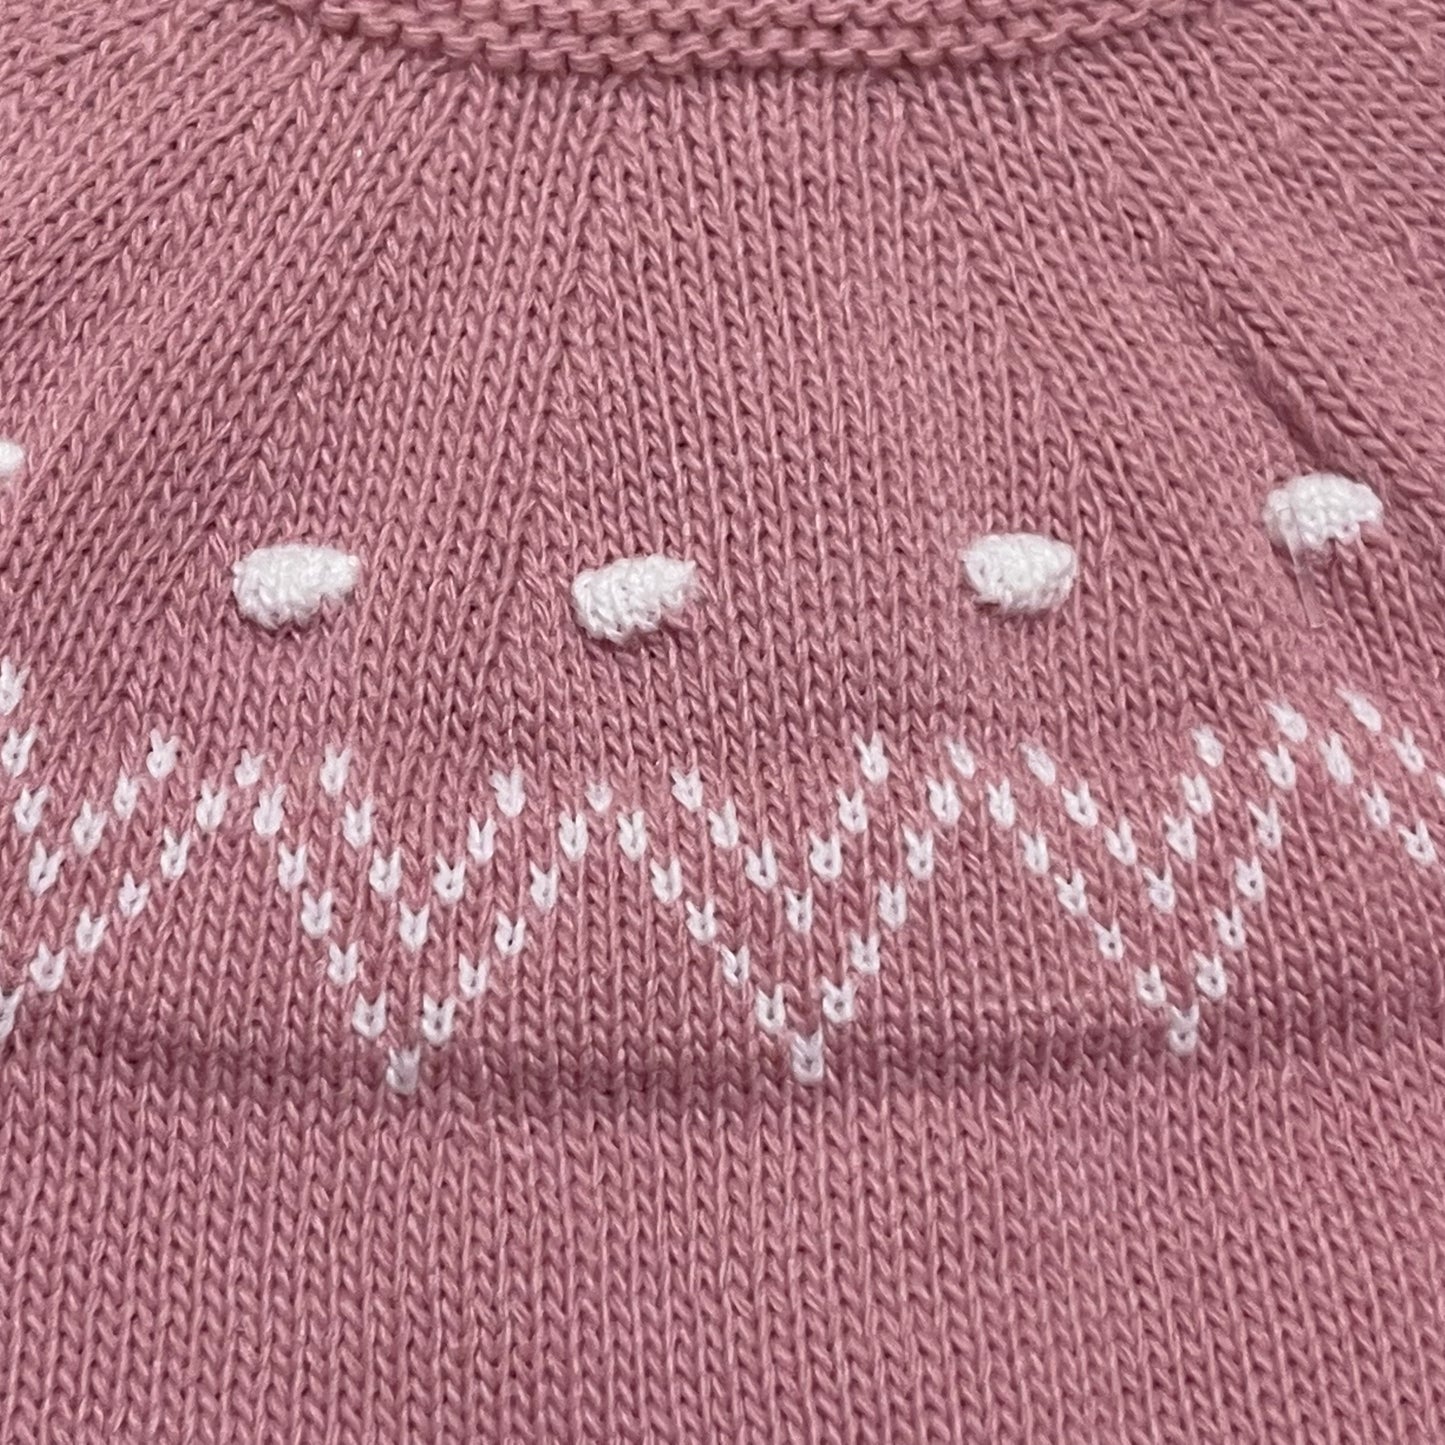 Comprar conjunto de primera puesta de lana. Color rosa maquillaje. Detalles en jersey. Temporada otoño/invierno.